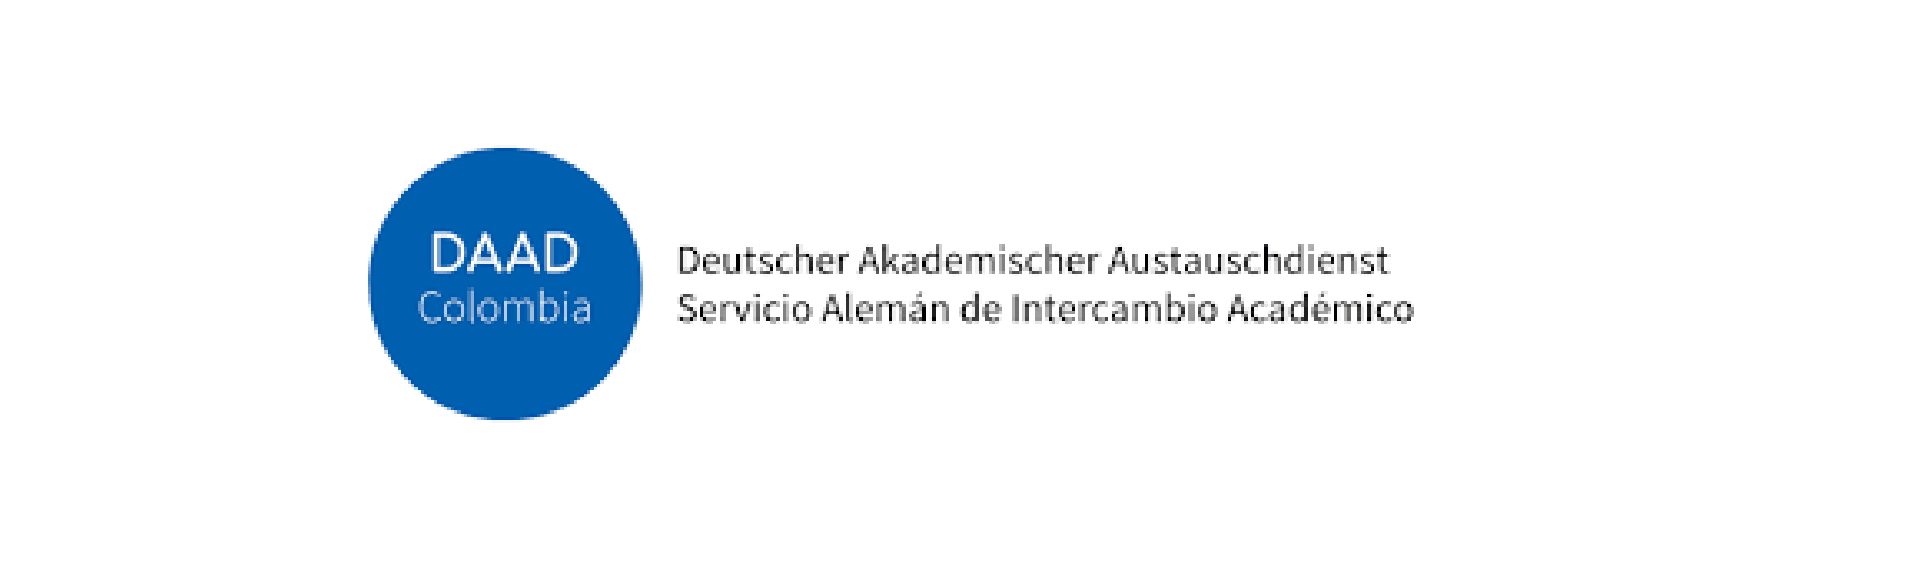 CONVOCATORIA ABIERTA A CHARLA INFORMATIVA: DOCTORADOS EN ALEMANIA, organizada por el Servicio Alemán de Intercambio Académico (DAAD).